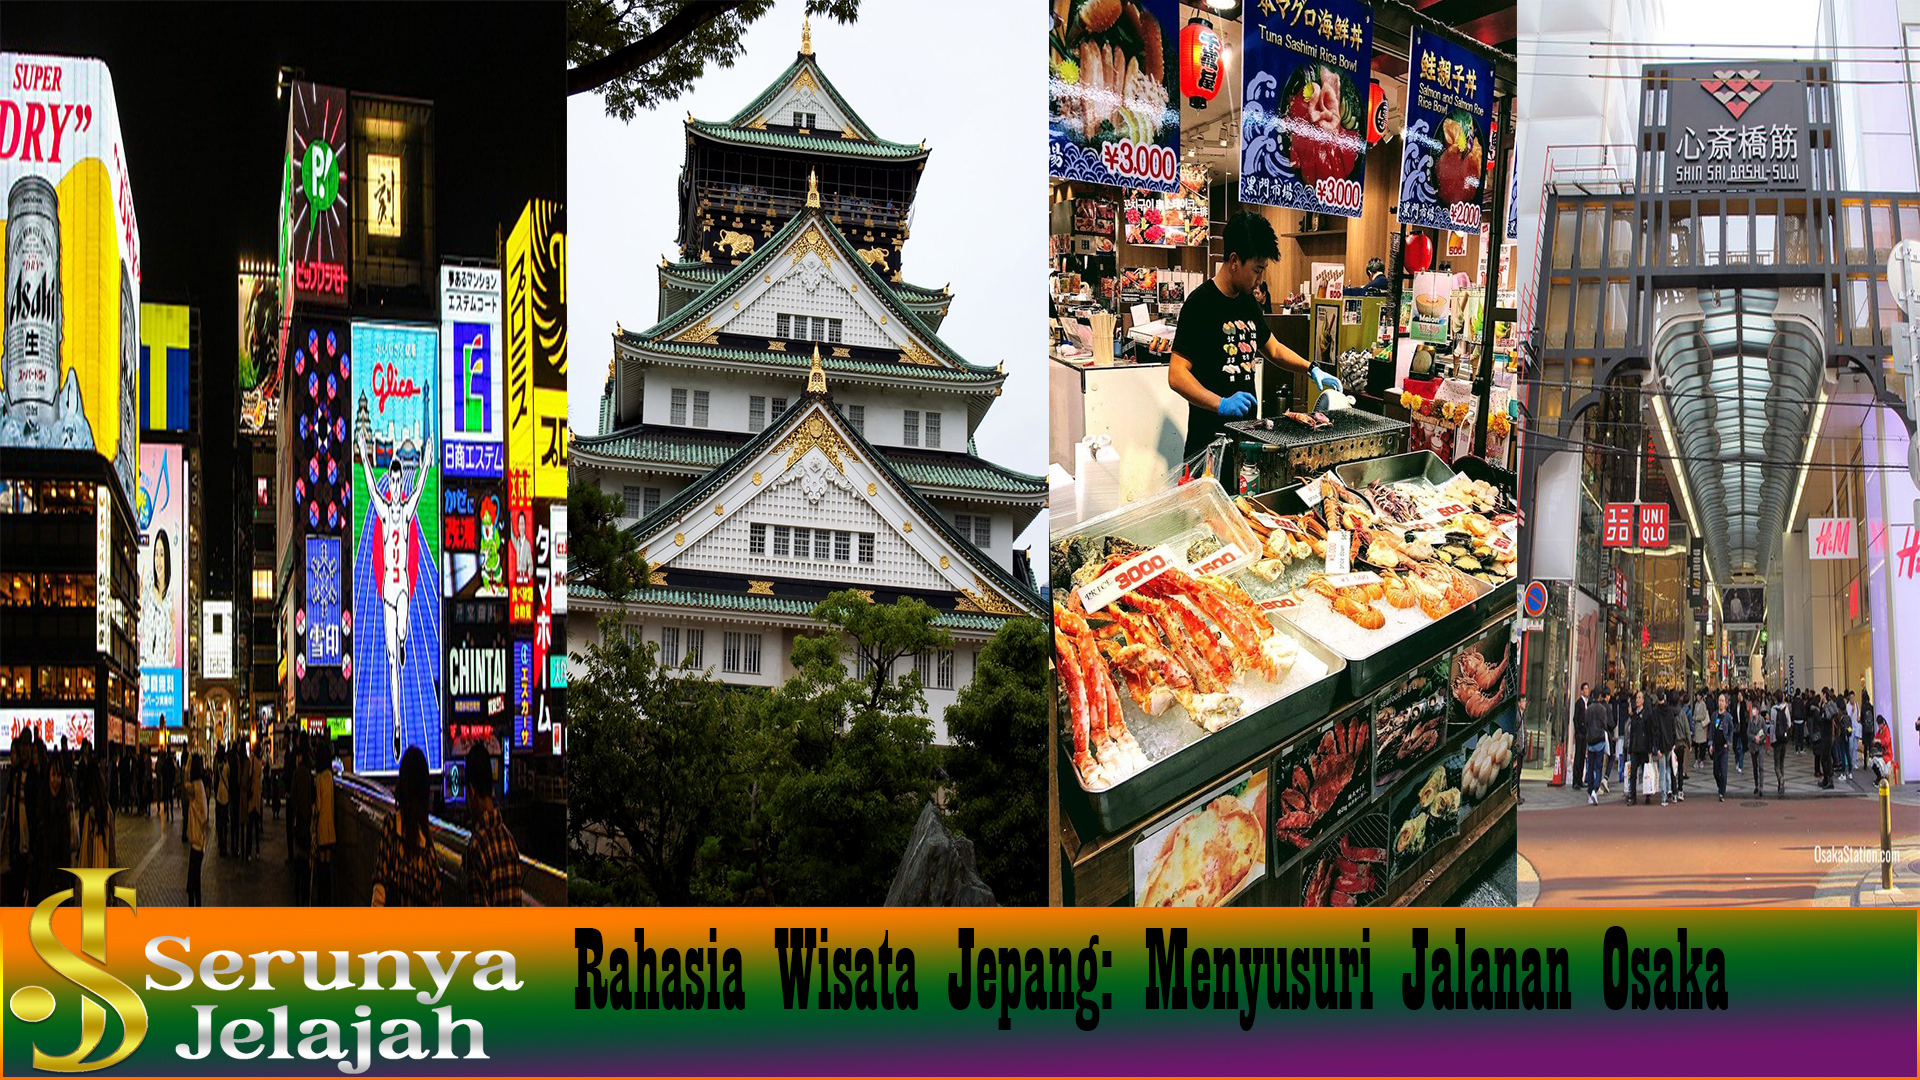 Rahasia Wisata Jepang: Menyusuri Jalanan Osaka